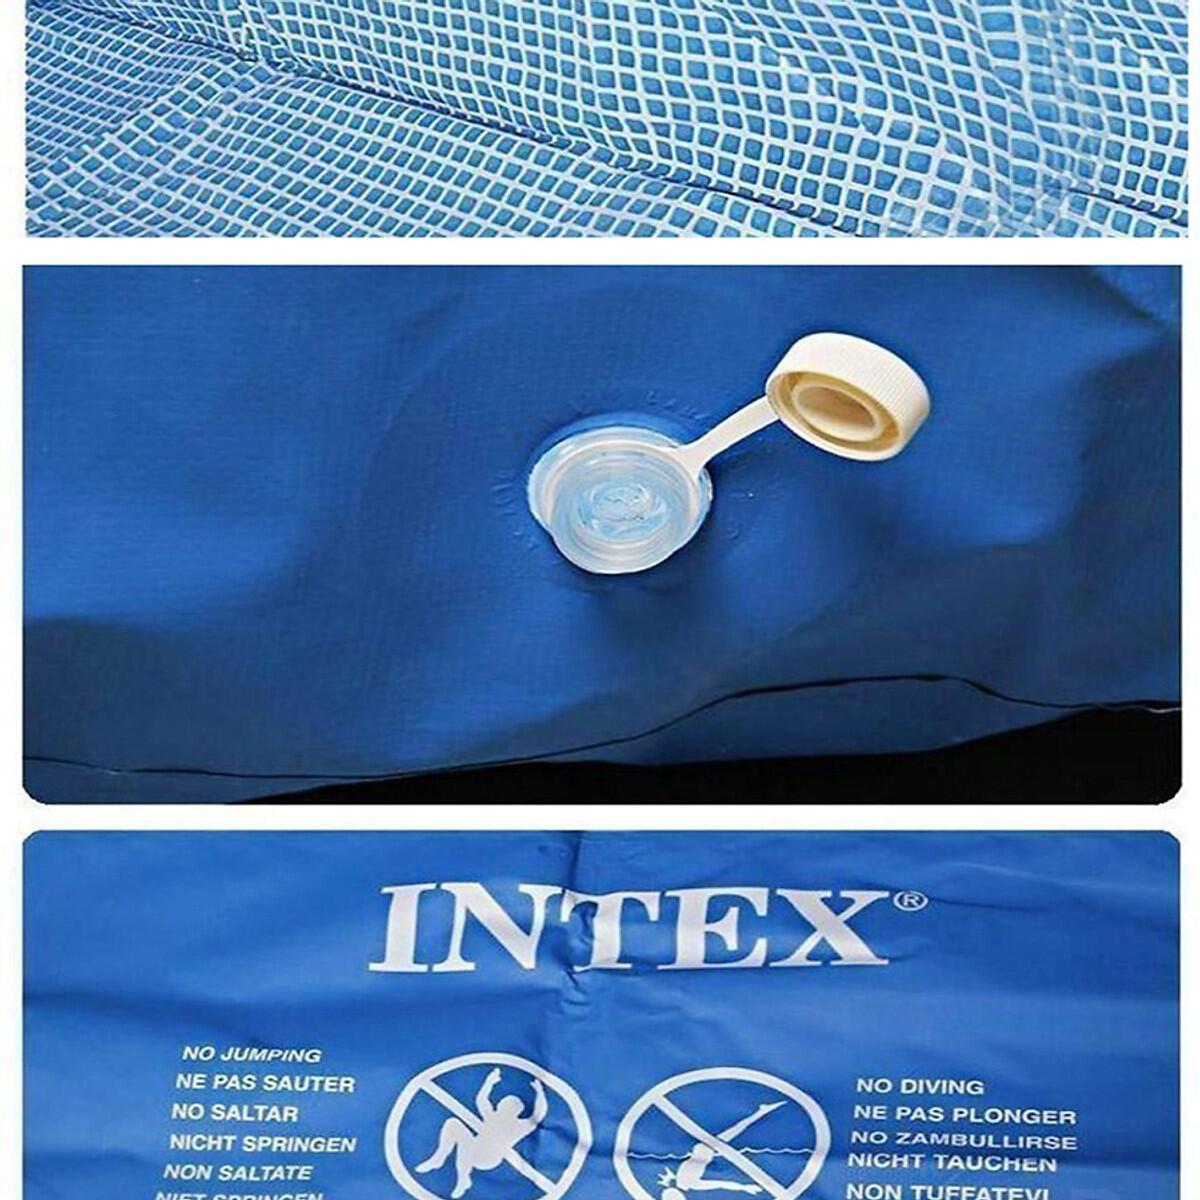 Bể bơi cao cấp INTEX 28273 khung kim loại chữ nhật 4.5m x 2.2m x 0.84m, tiêu chuẩn Châu Âu